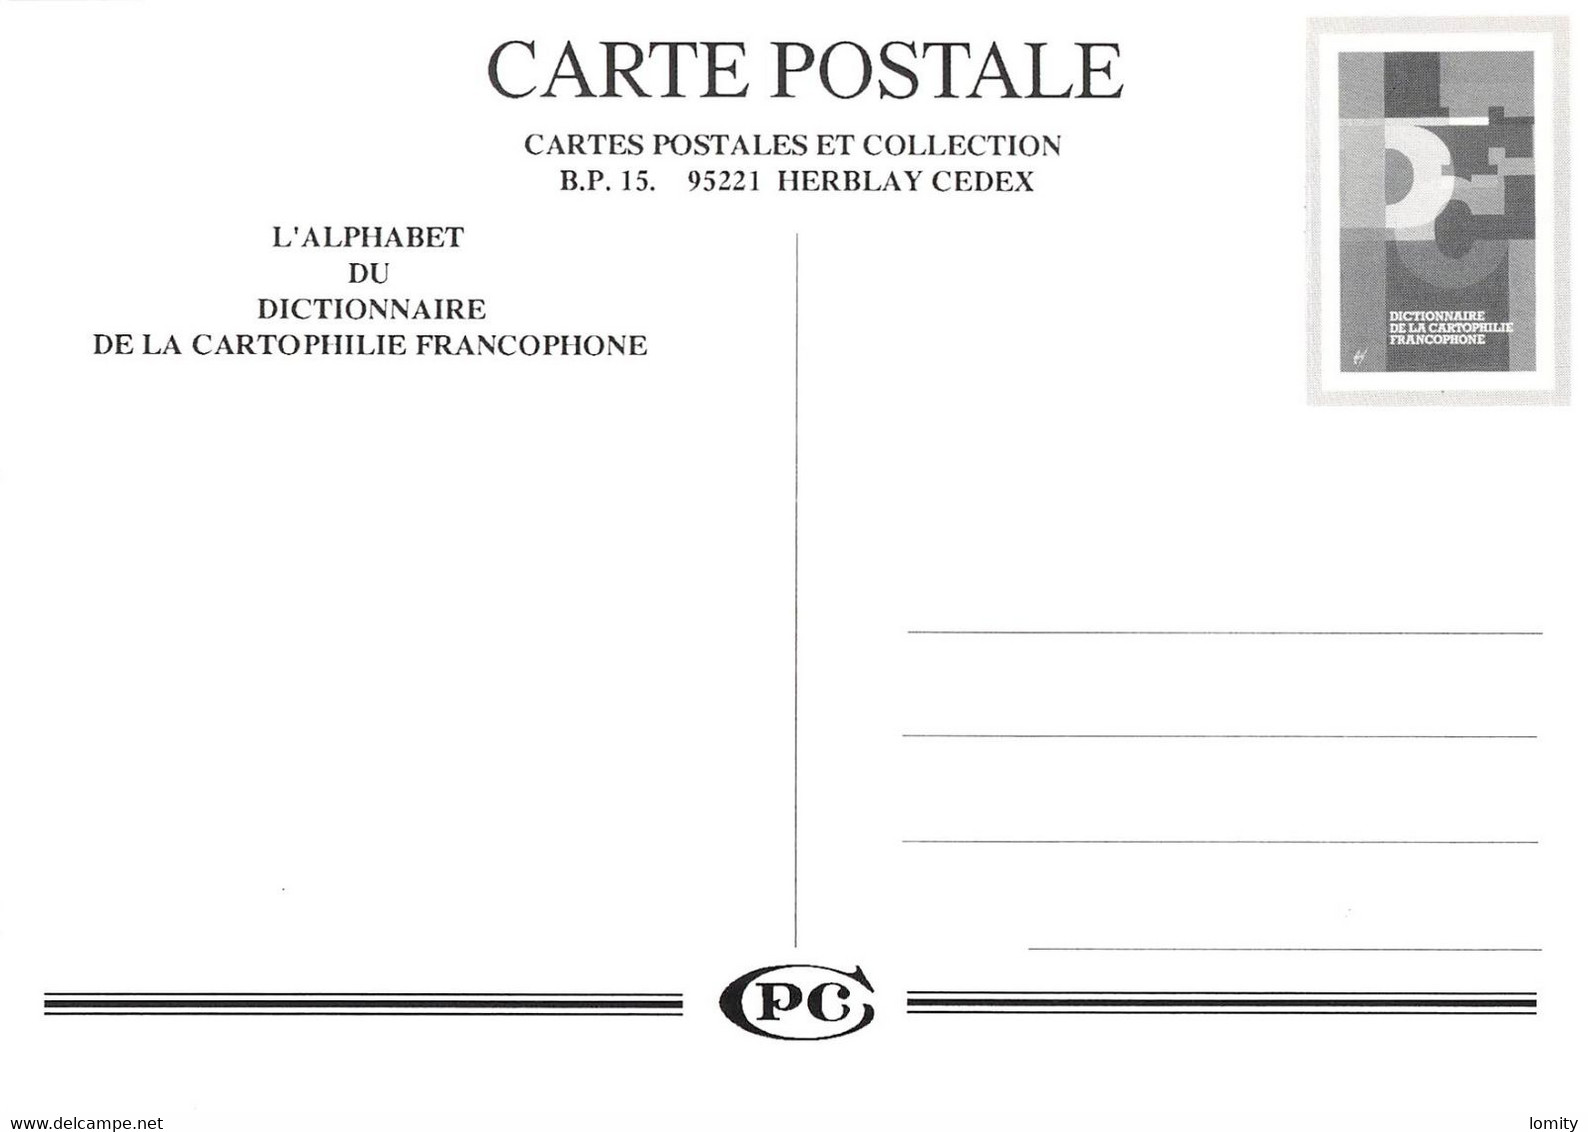 illustrateur série complète 33 cartes dictionnaire de la cartophilie francophone Hamm Veyri Wittmer Oziouls Avati Claval